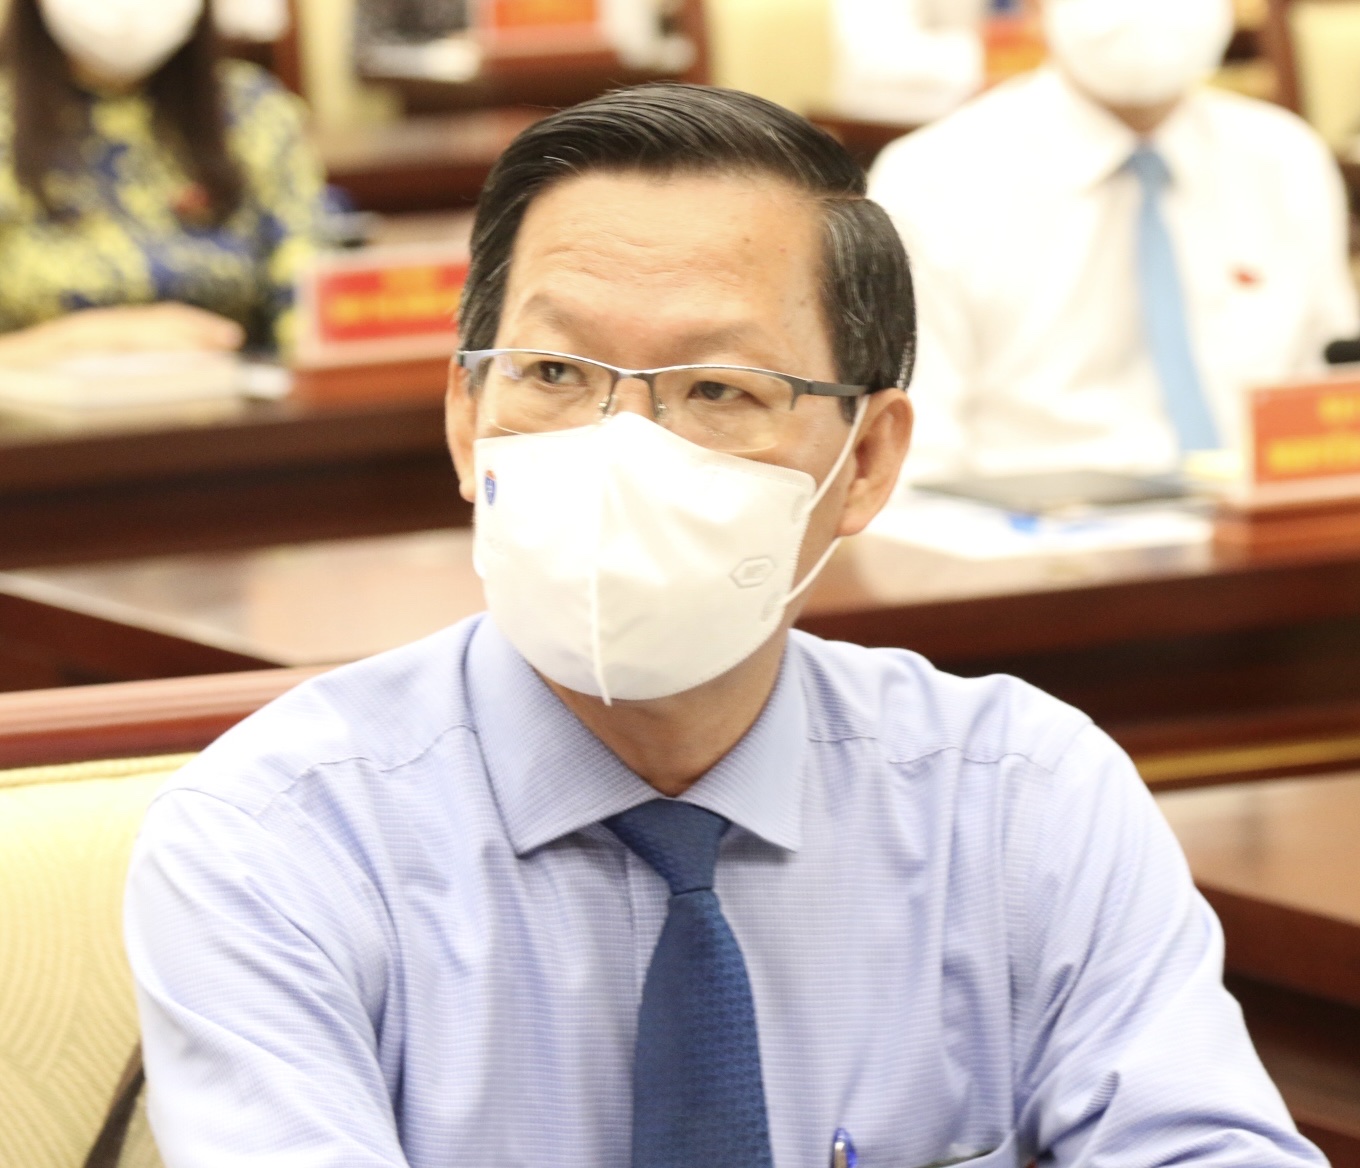 Ông Phan Văn Mãi được Thủ tướng Chính phủ phê chuẩn làm Chủ tịch UBND TPHCM nhiệm kỳ 2021 - 2026 - ảnh: Tuyết Dân.